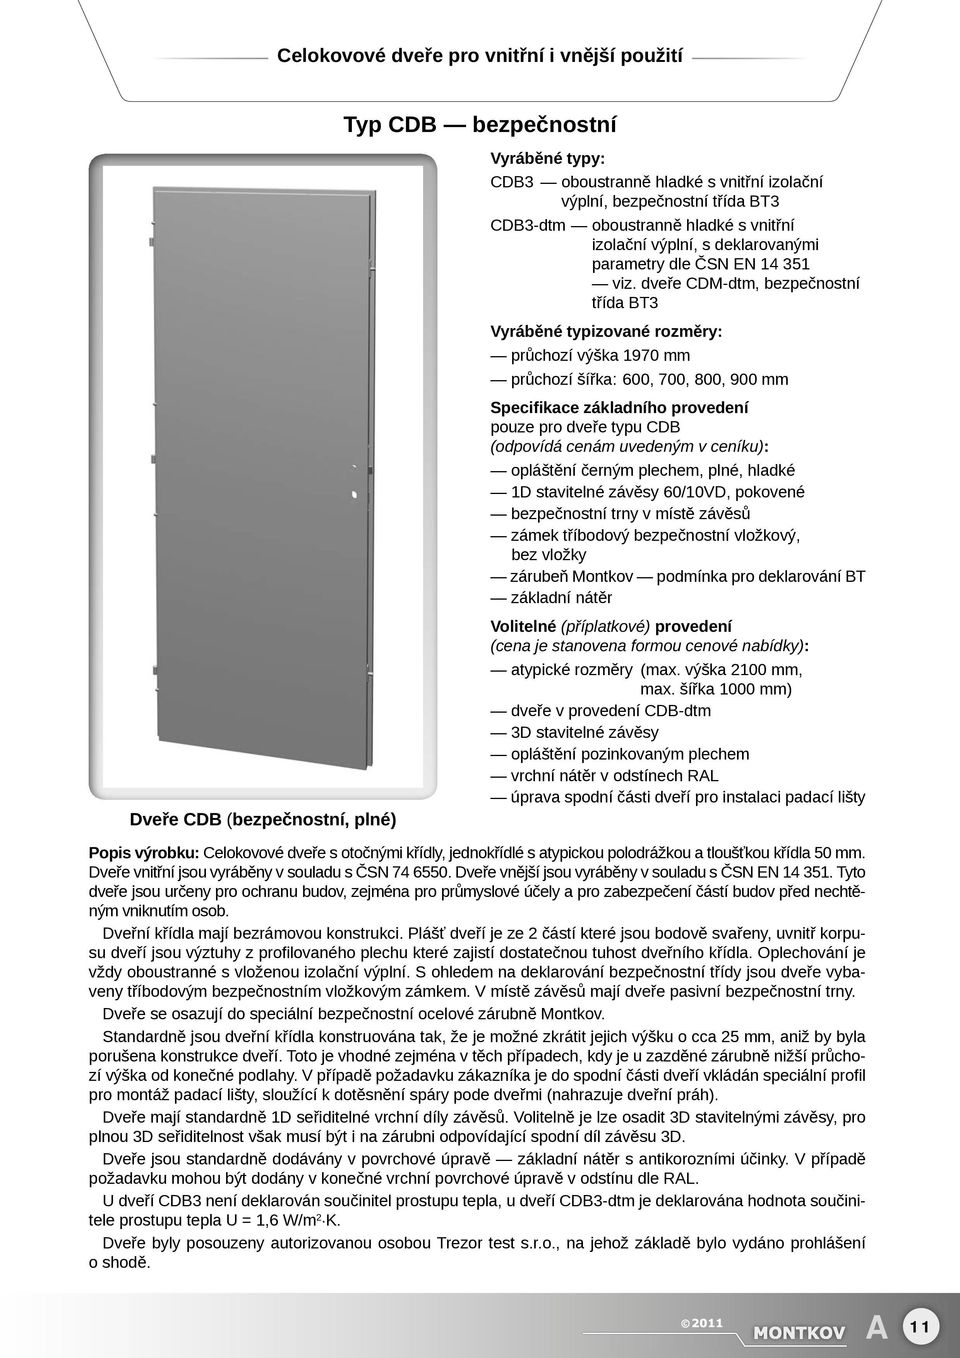 dveře CDM-dtm, bezpečnostní třída BT3 Vyráběné typizované rozměry: průchozí výška 1970 mm průchozí šířka: 600, 700, 800, 900 mm Specifikace základního provedení pouze pro dveře typu CDB (odpovídá